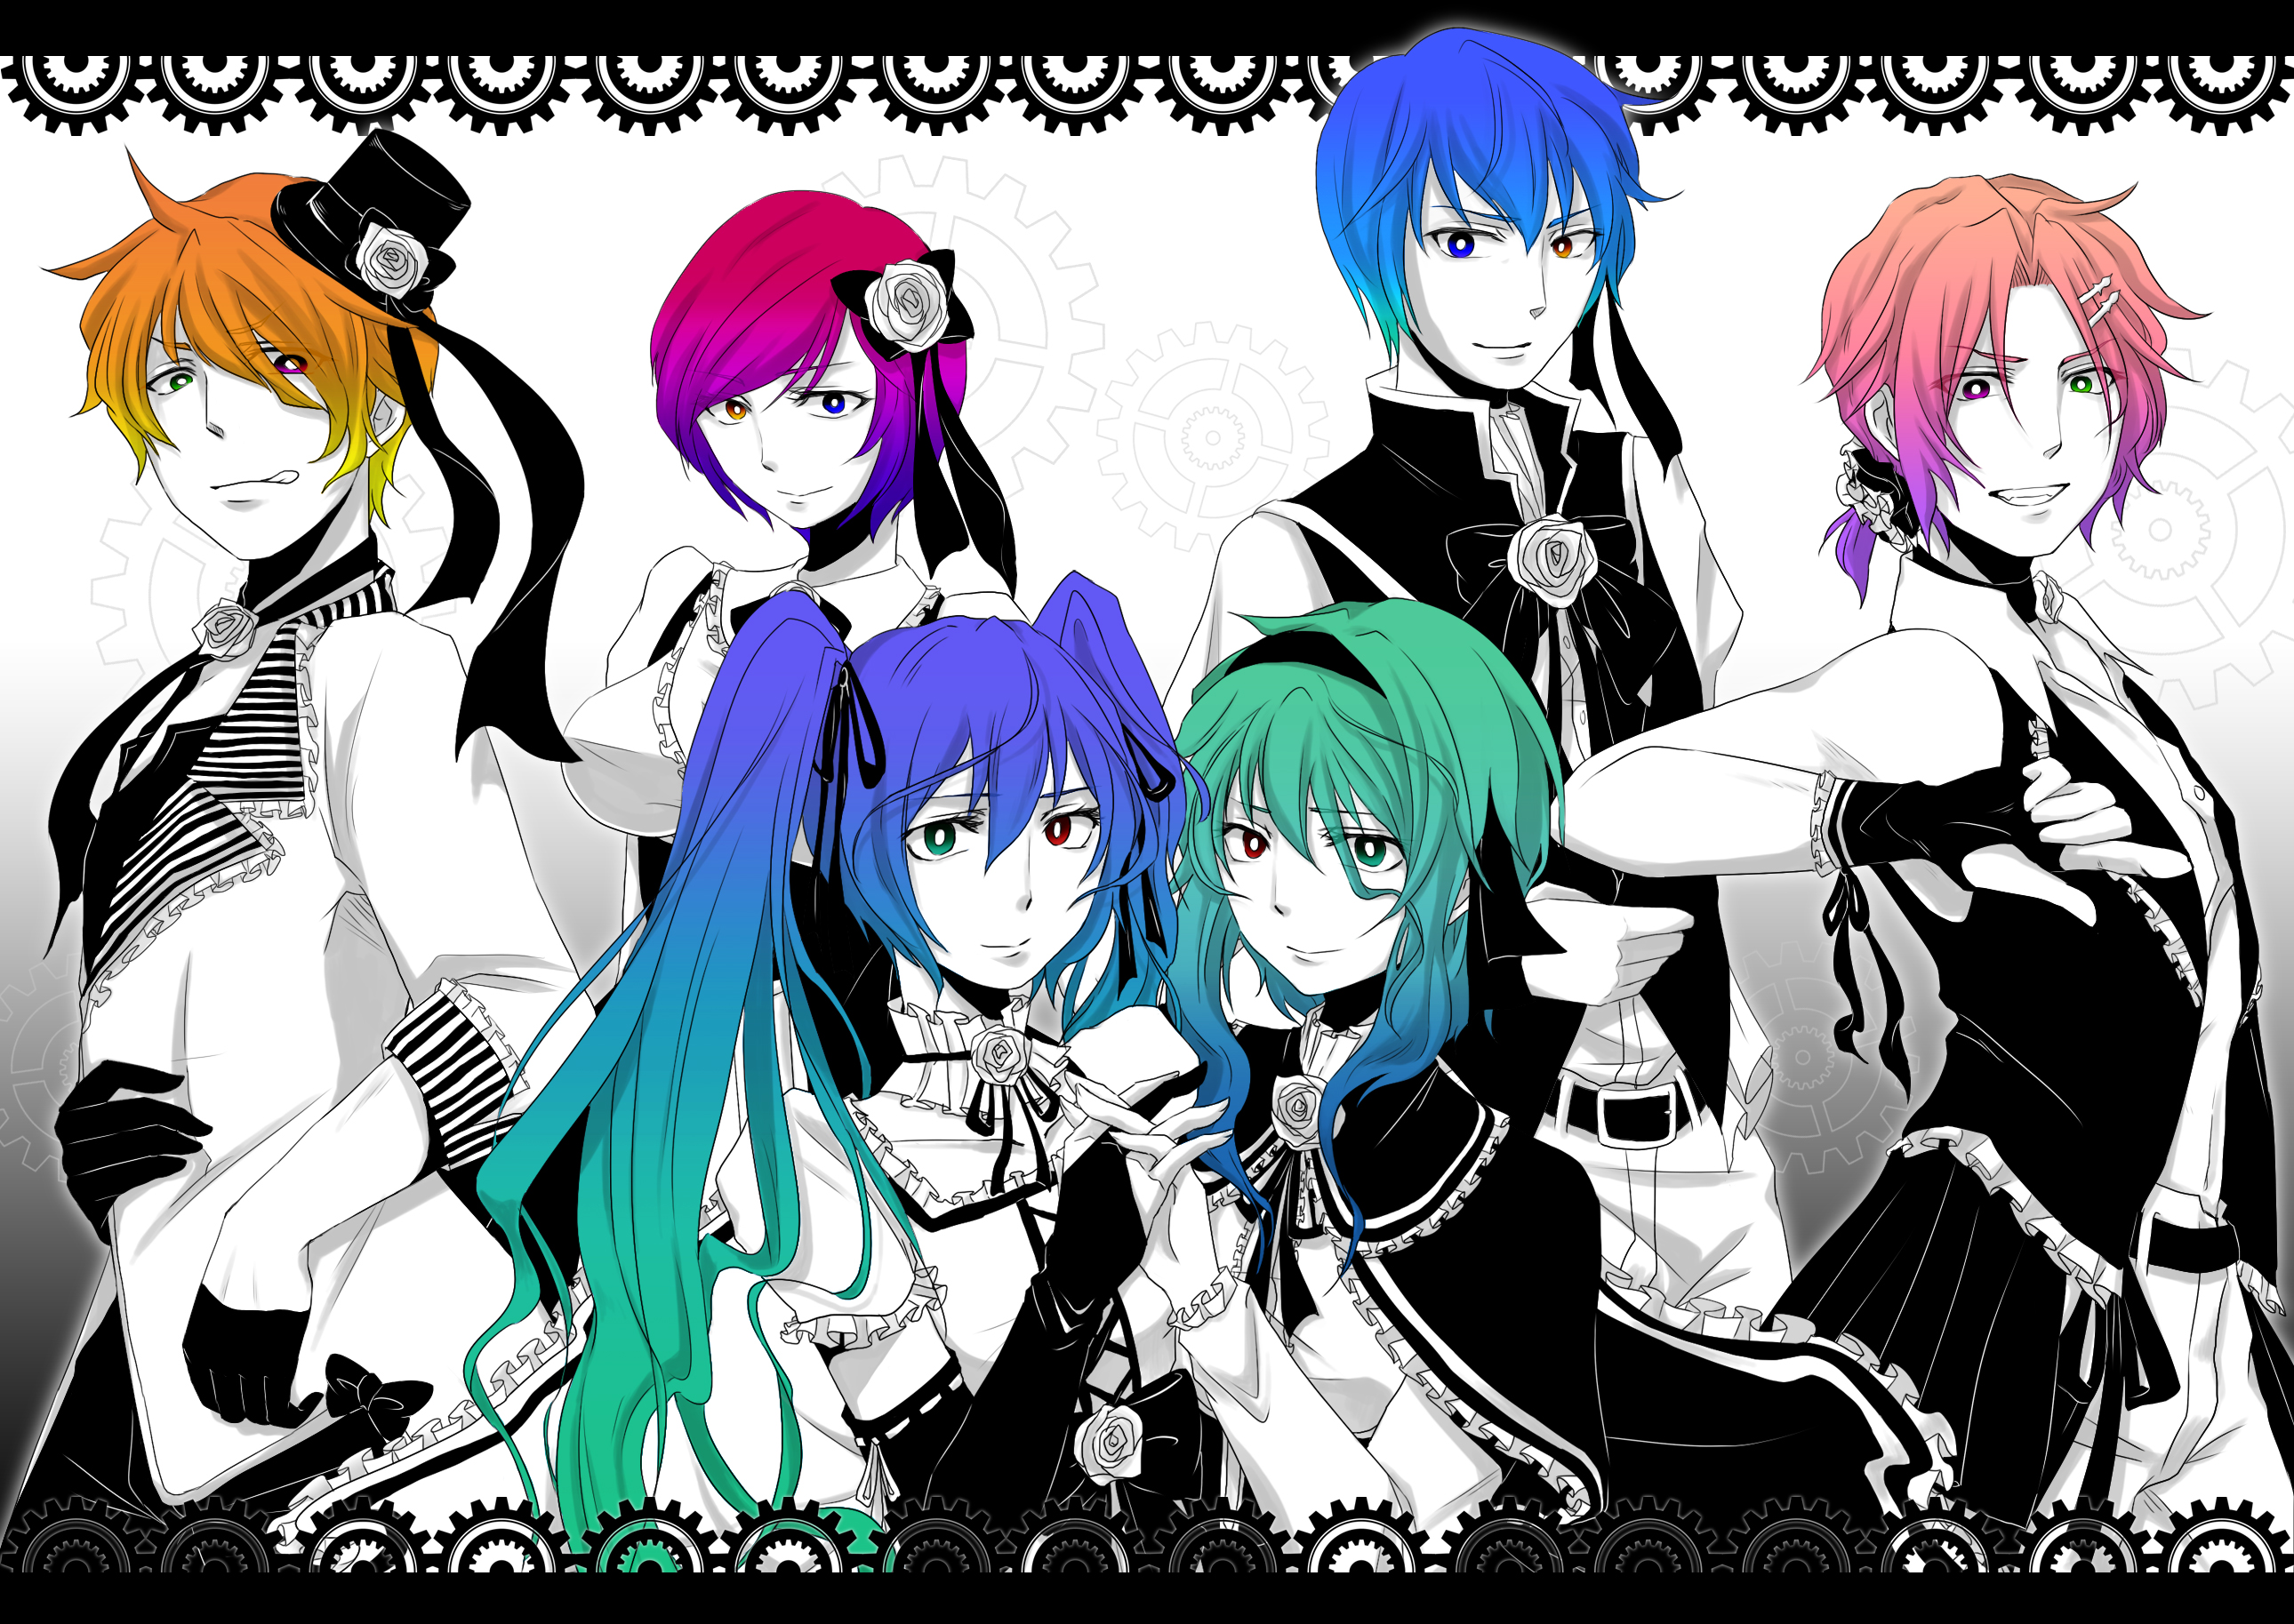 Descarga gratuita de fondo de pantalla para móvil de Gótico, Vocaloid, Animado, Hatsune Miku, Rin Kagamine, Gumi (Vocaloid), Kaito (Vocaloid), Len Kagamine, Meiko (Vocaloid).